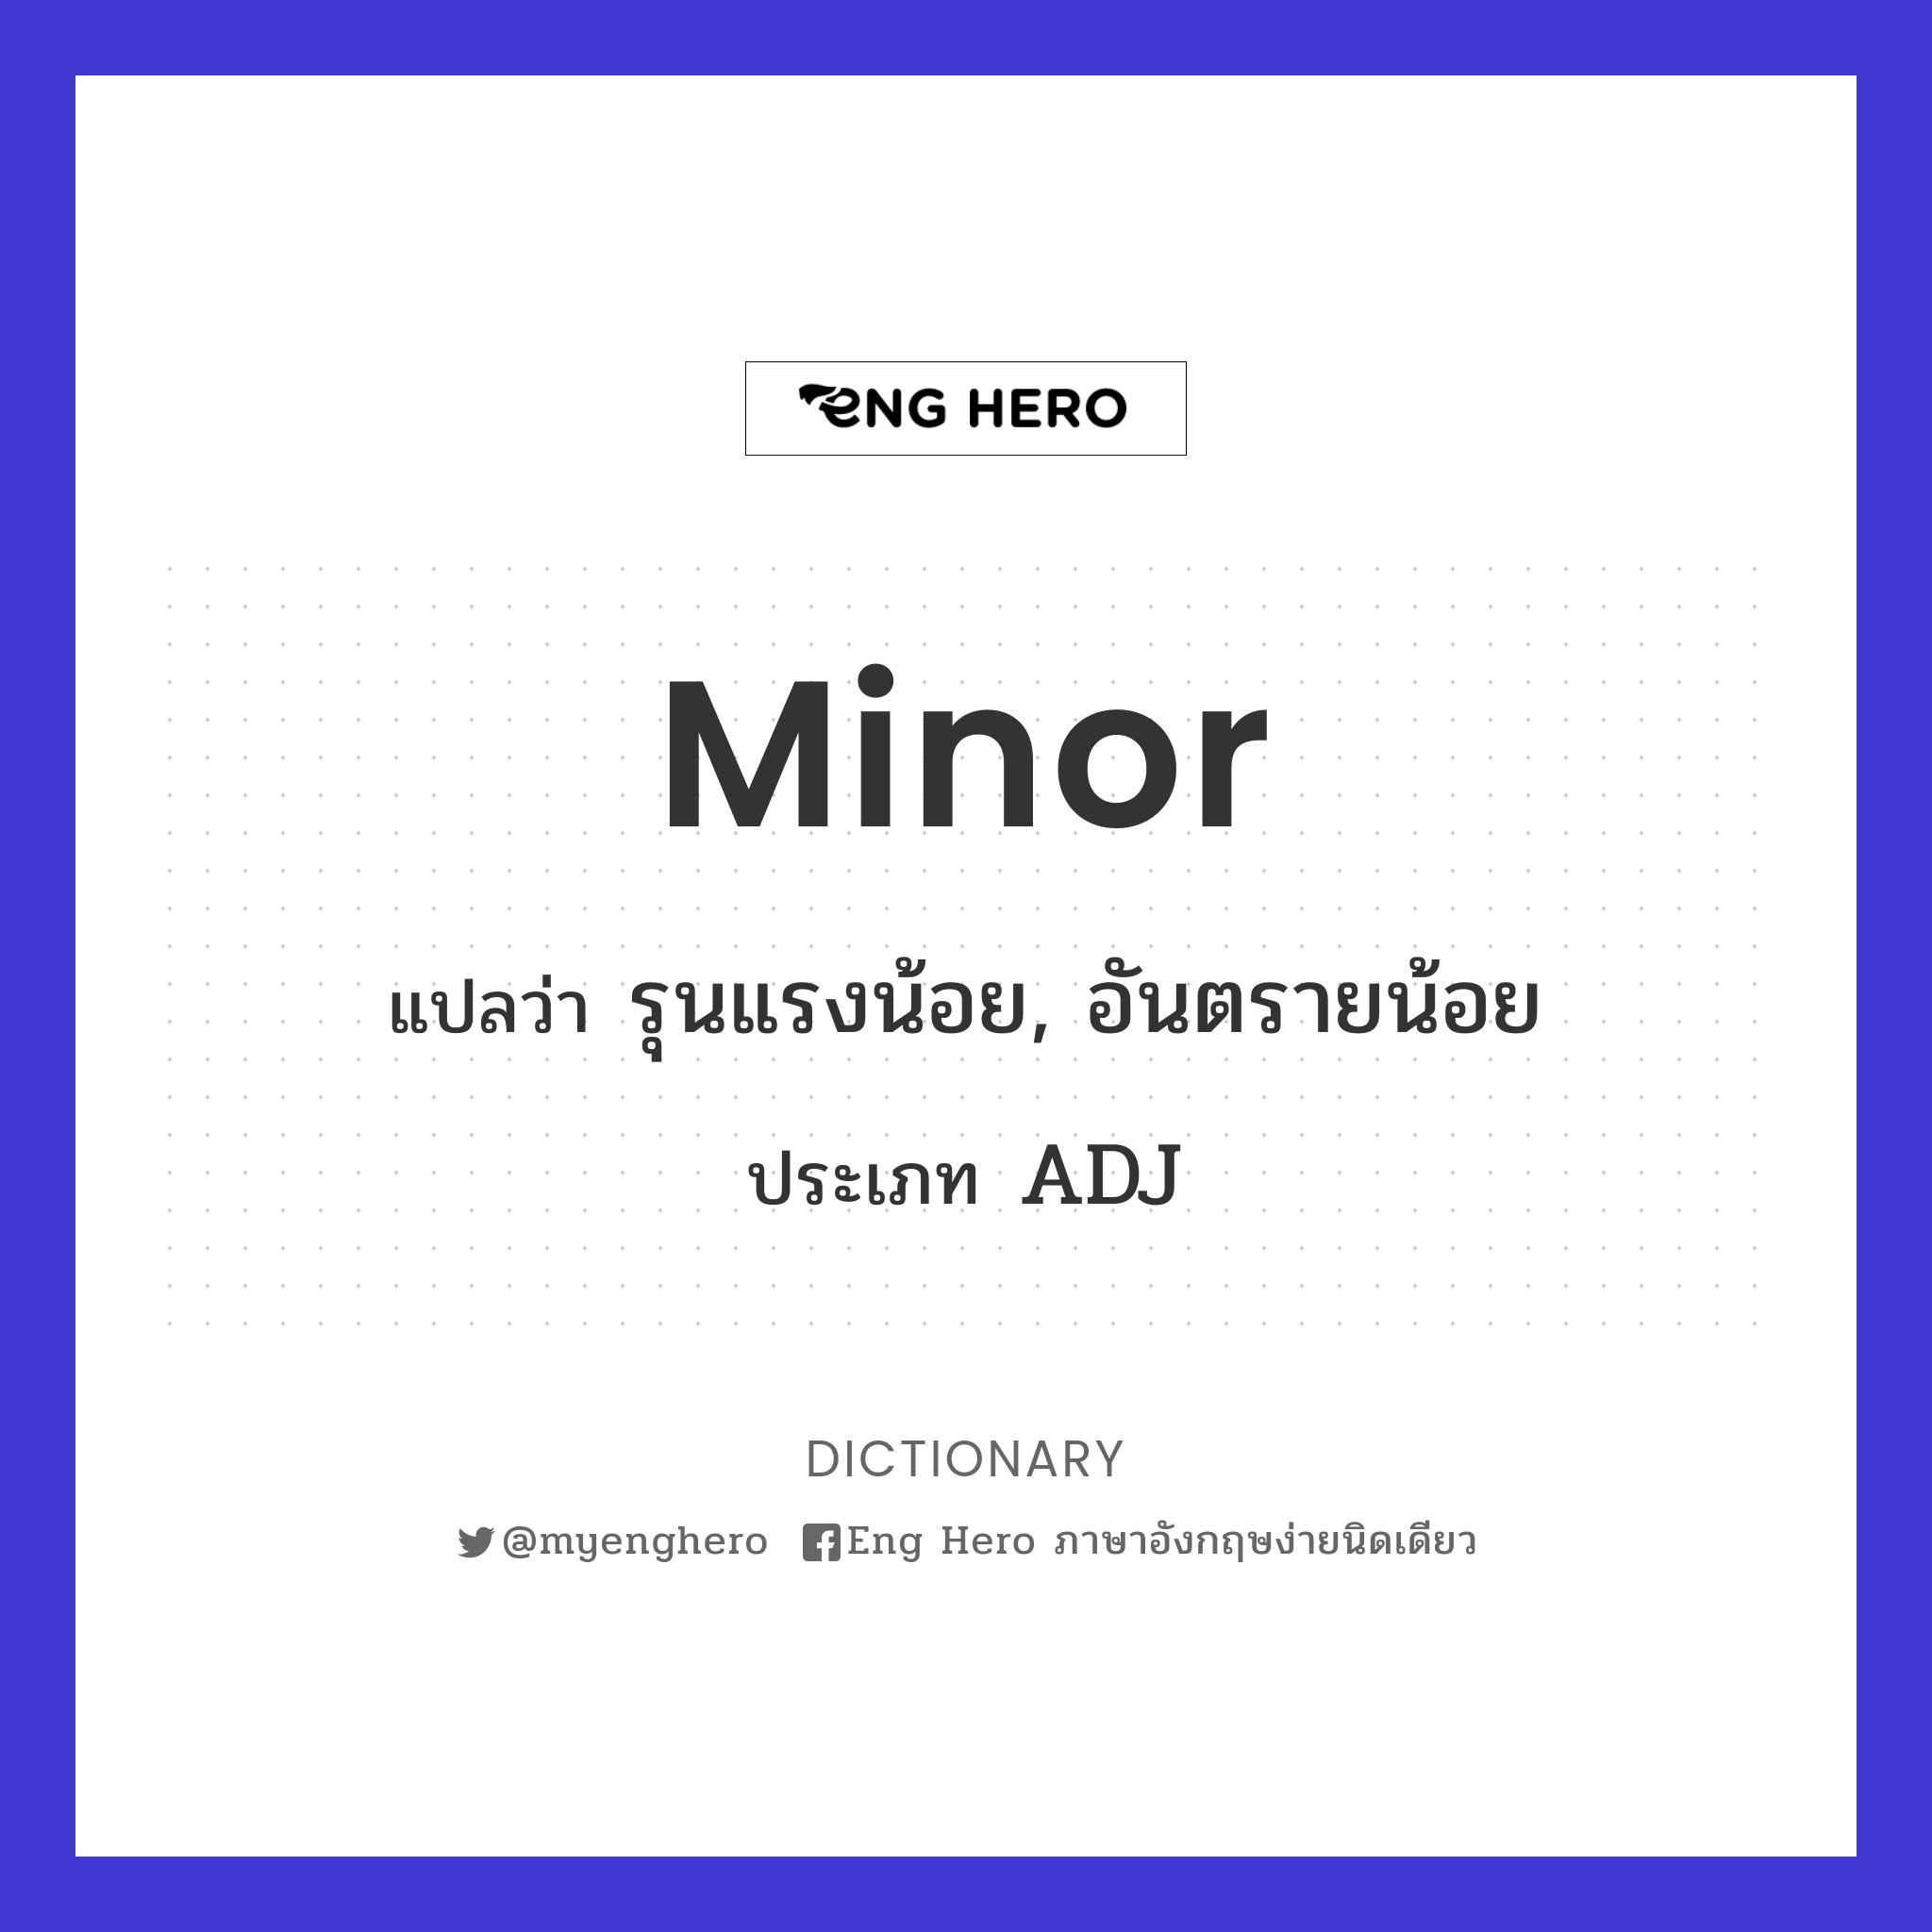 minor